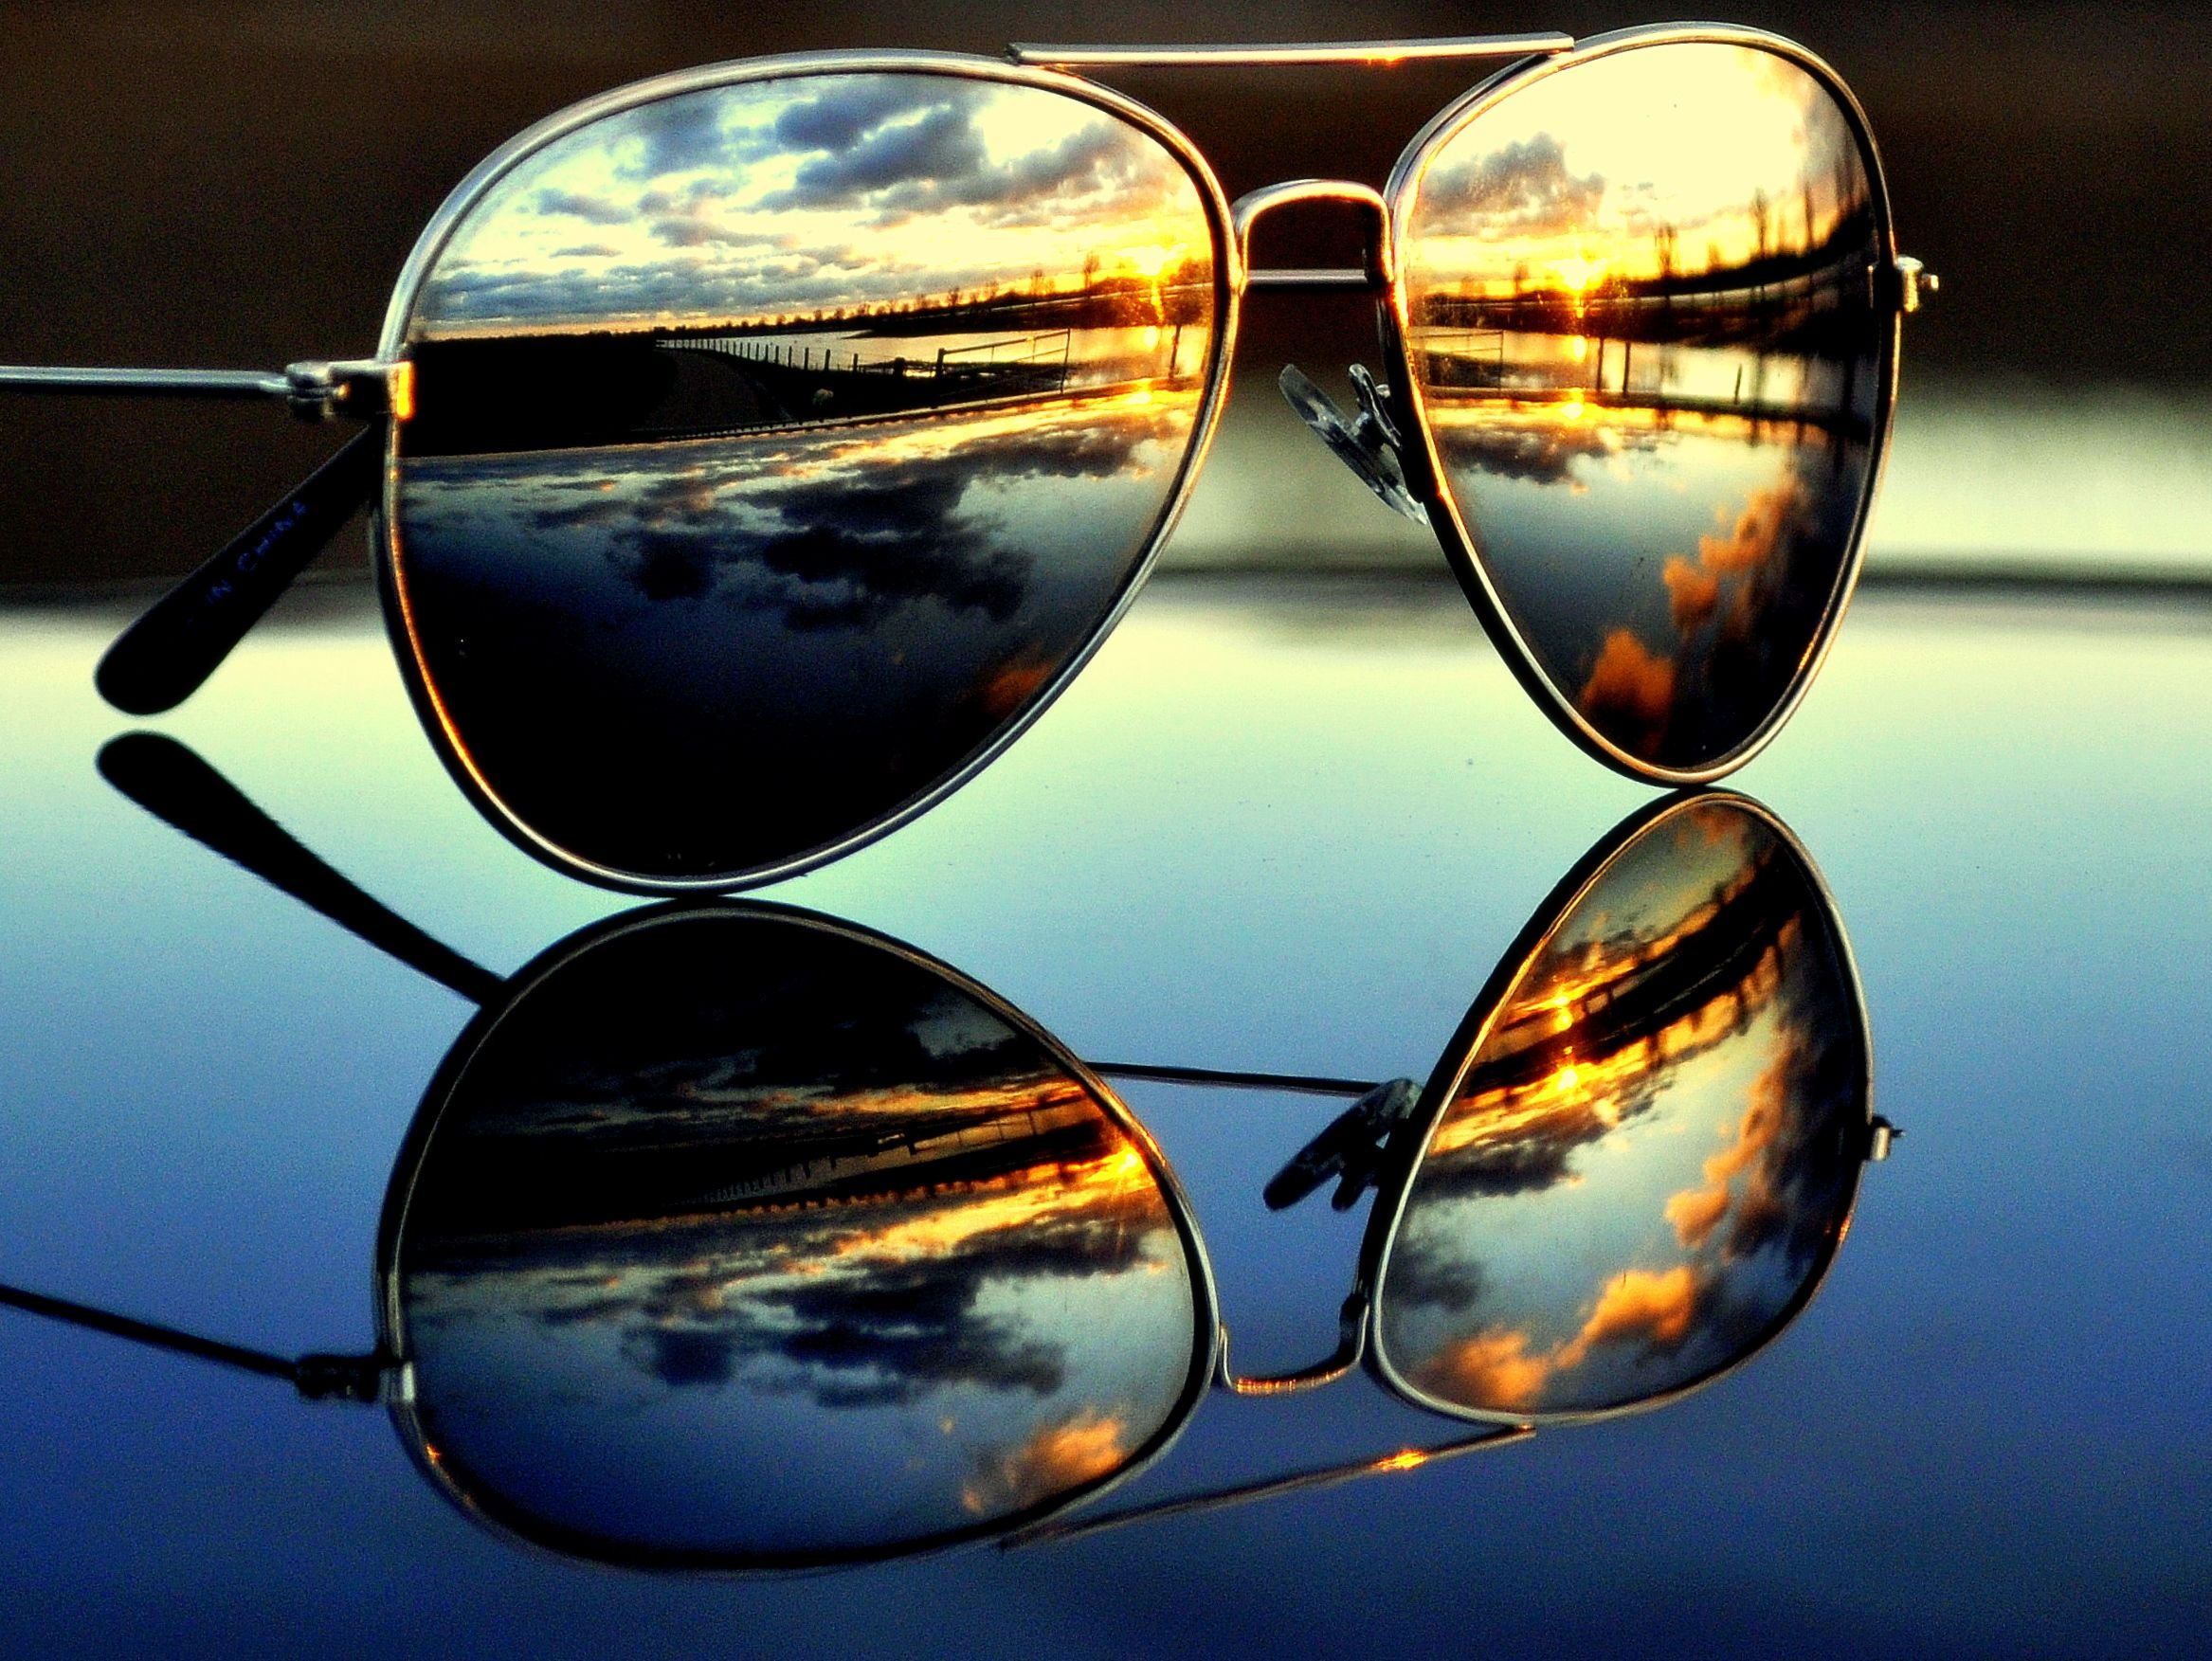 Фото отражение в очках. Отражение в очках. Солнечные очки. Солнцезащитные очки с отражением. Отражение в солнечных очках.